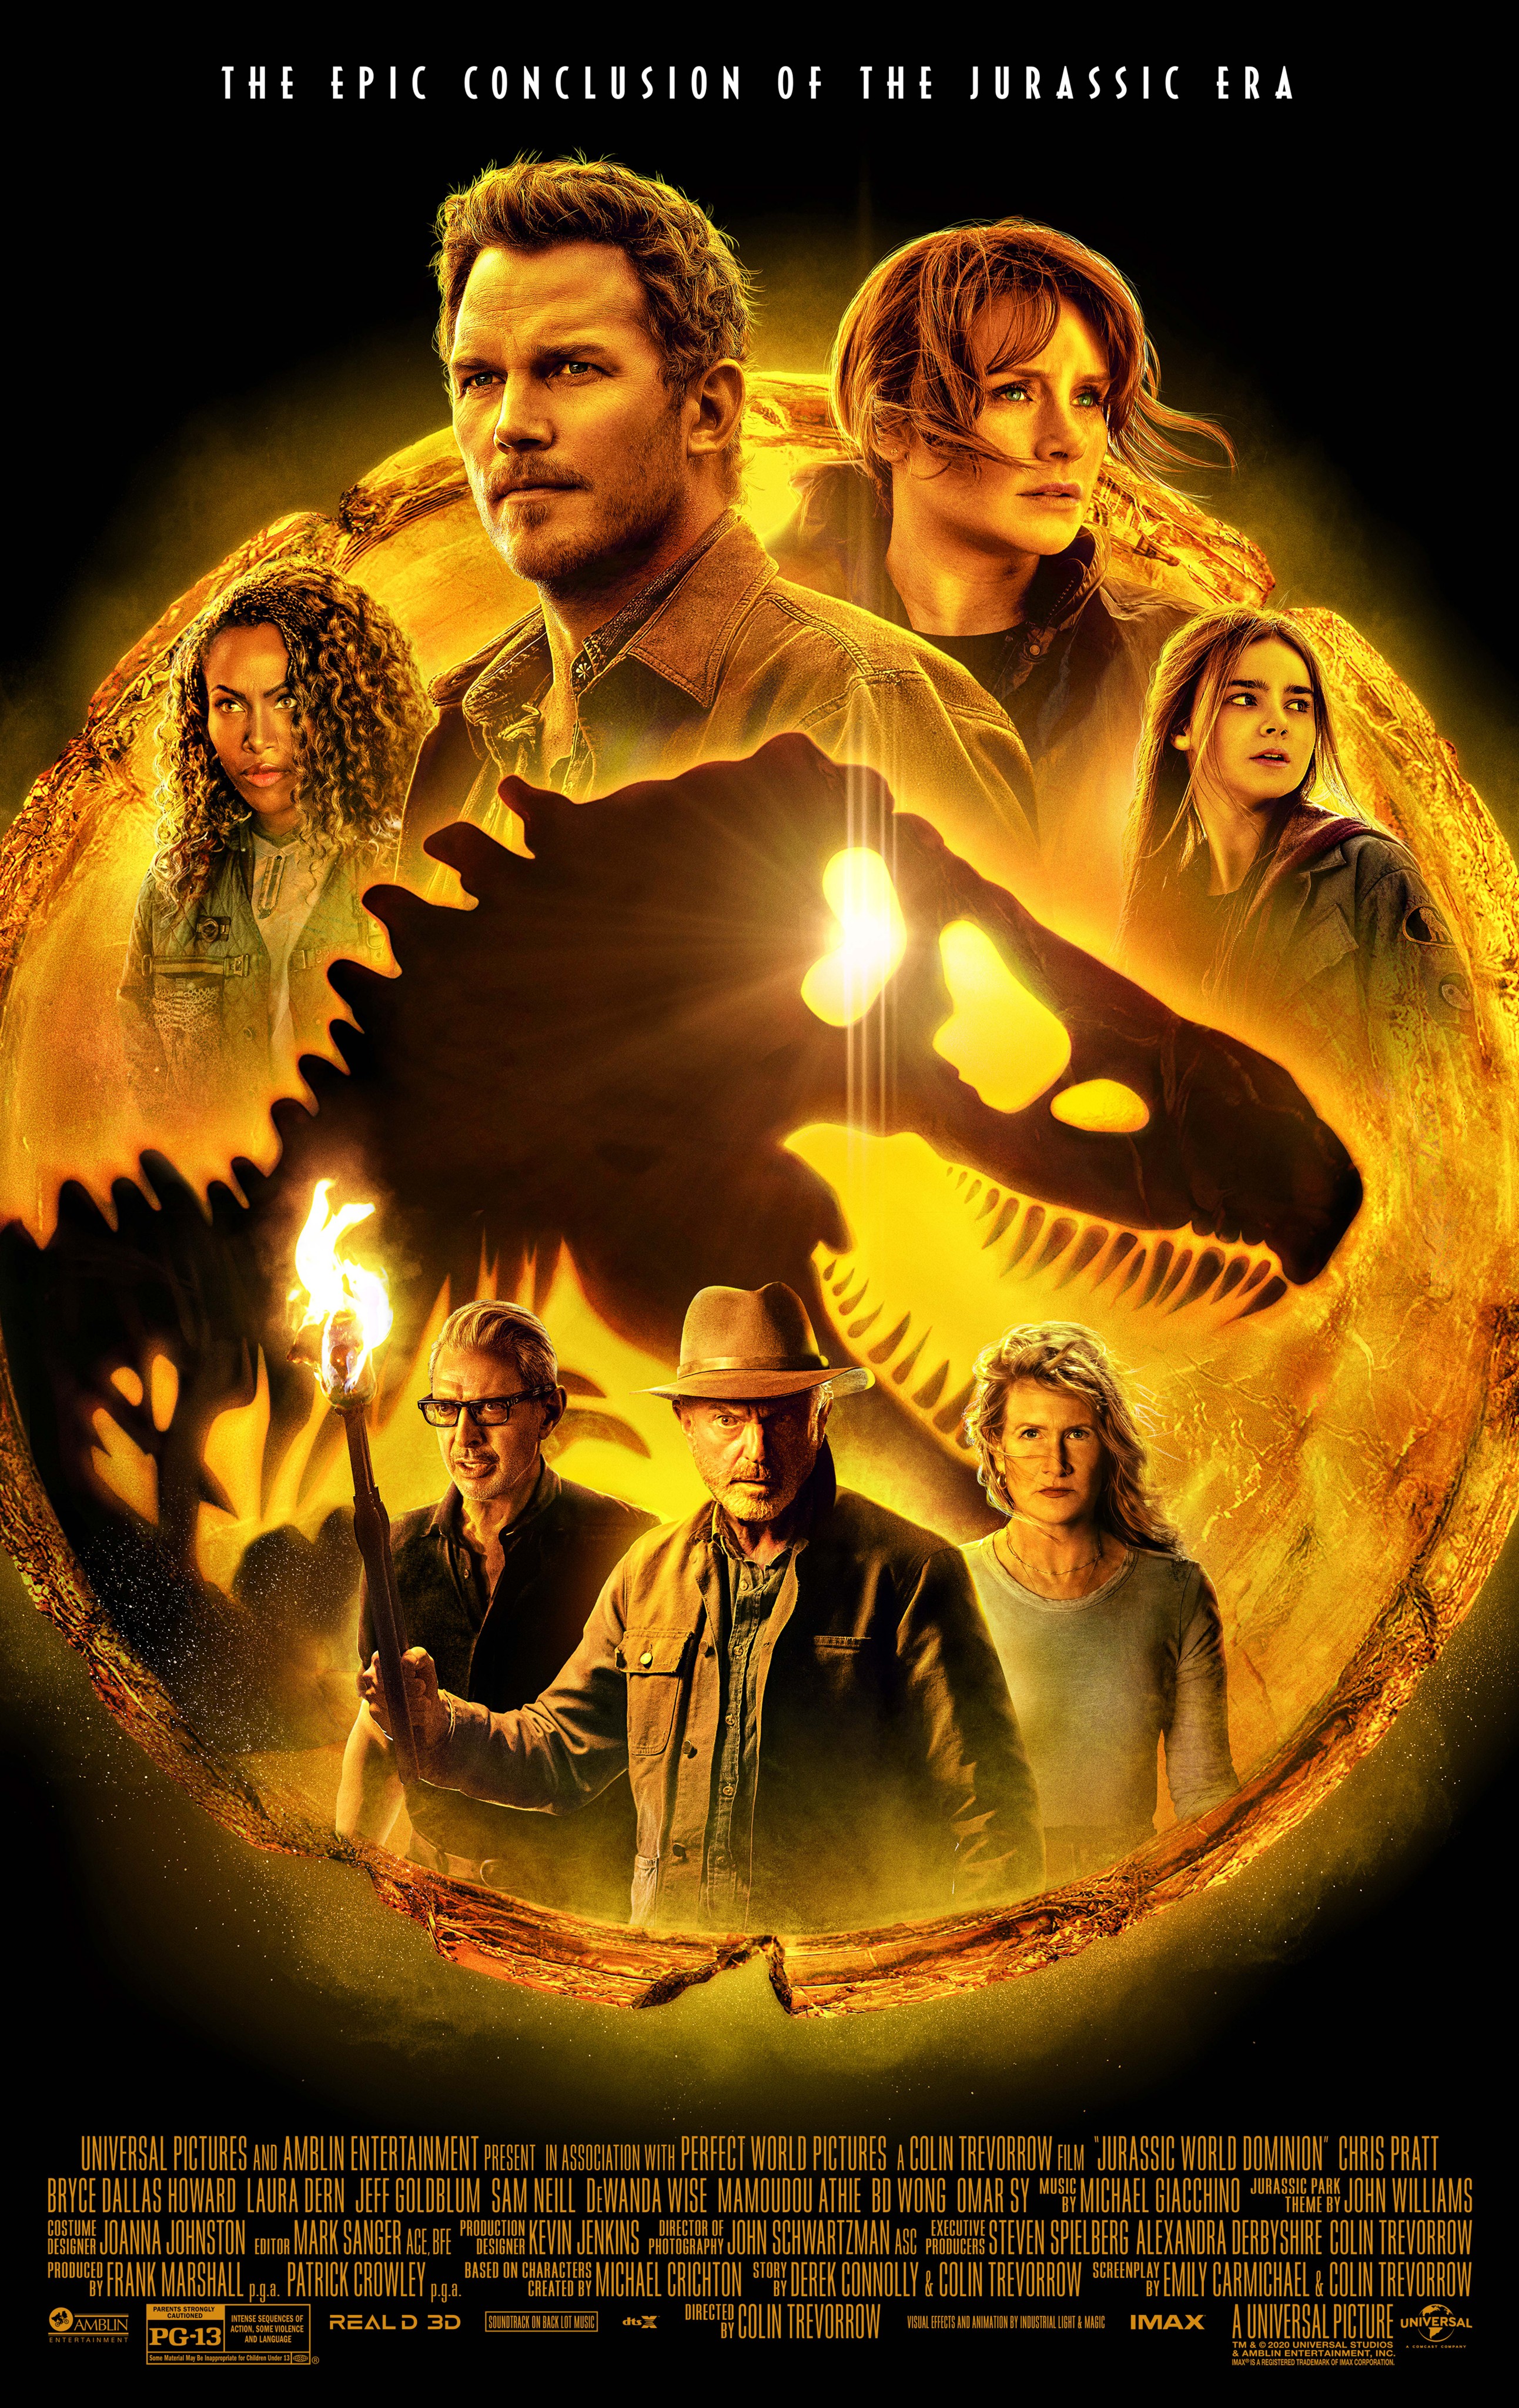 Jurassic World 4 (2025): Is It a Reboot? Will Chris Pratt Return?